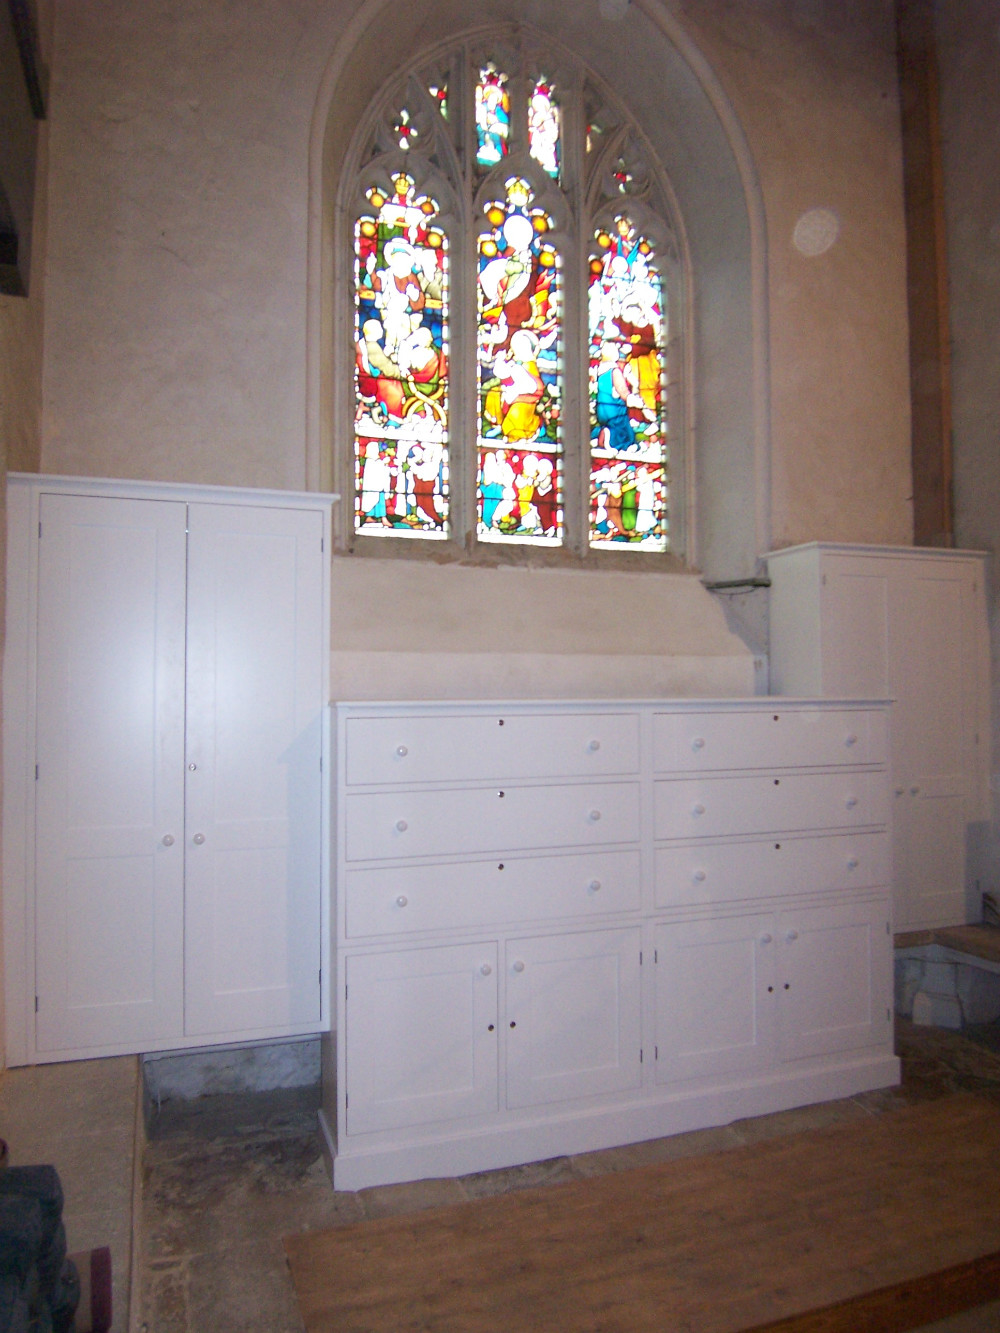 In-frame vestry cabinetry